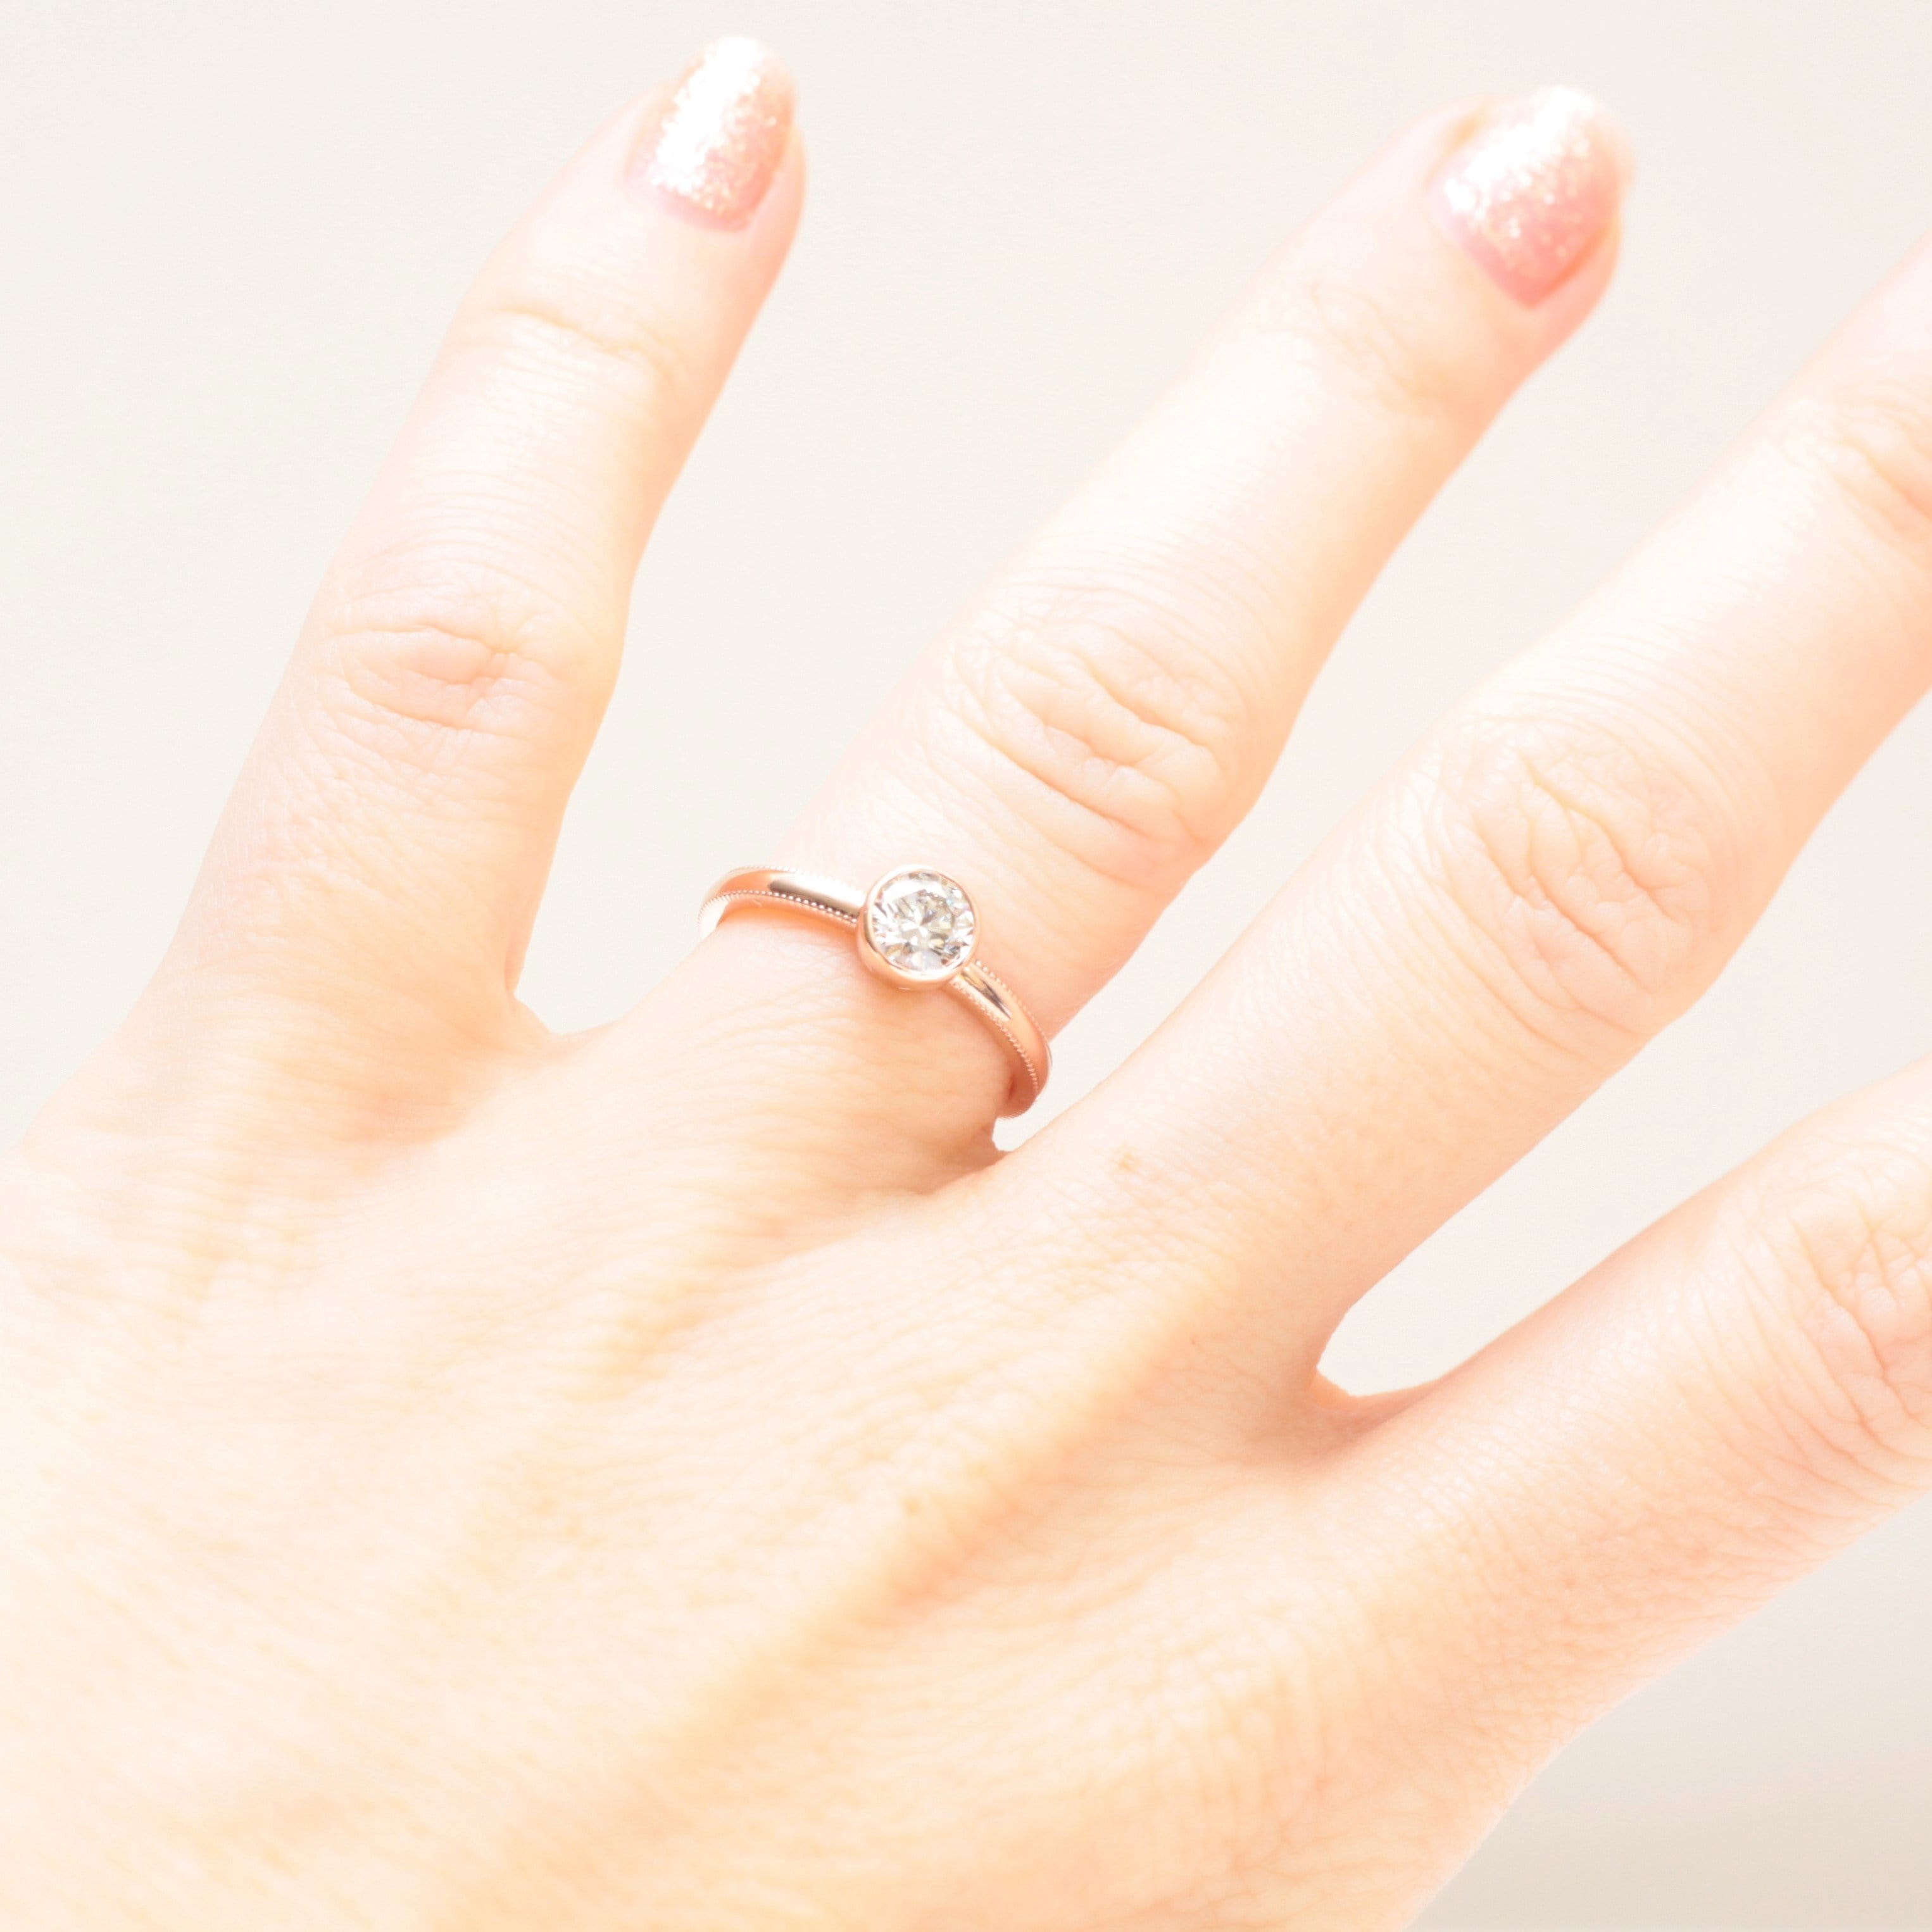 Milgrain diamond engagement ring - Vinny &amp; Charles